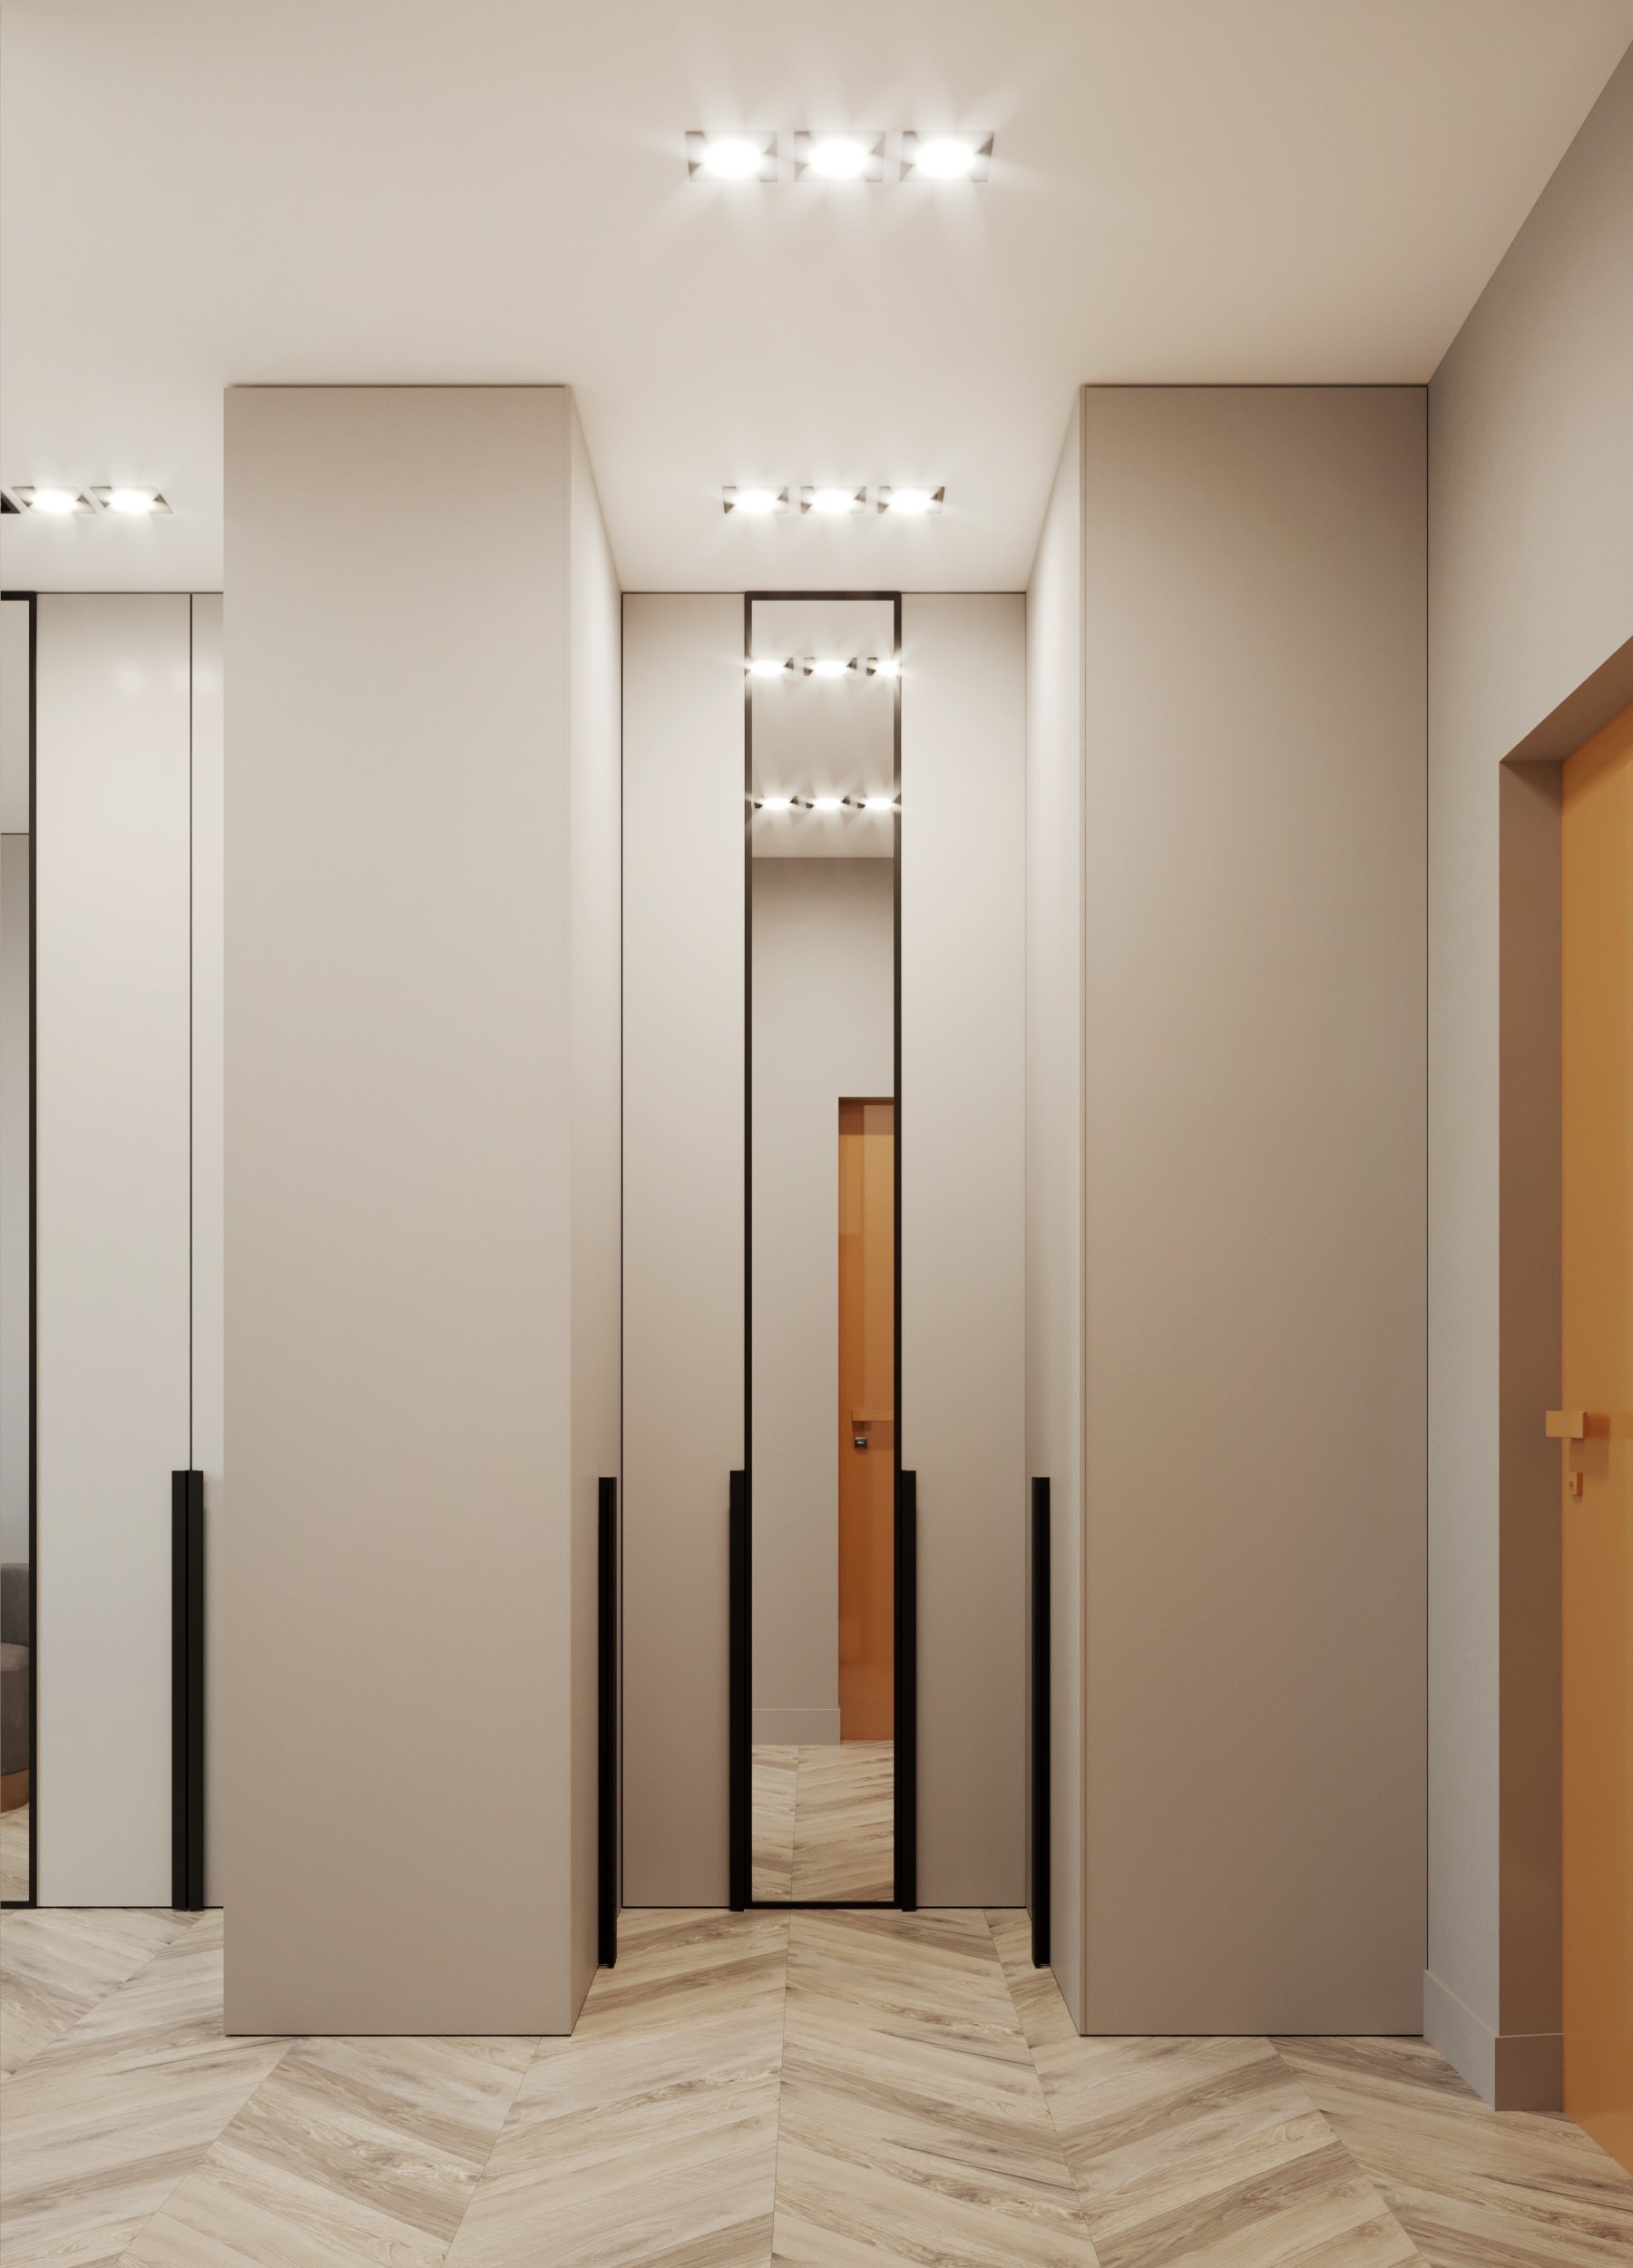 Интерьер коридора с подсветкой настенной, подсветкой светодиодной и с подсветкой в современном стиле